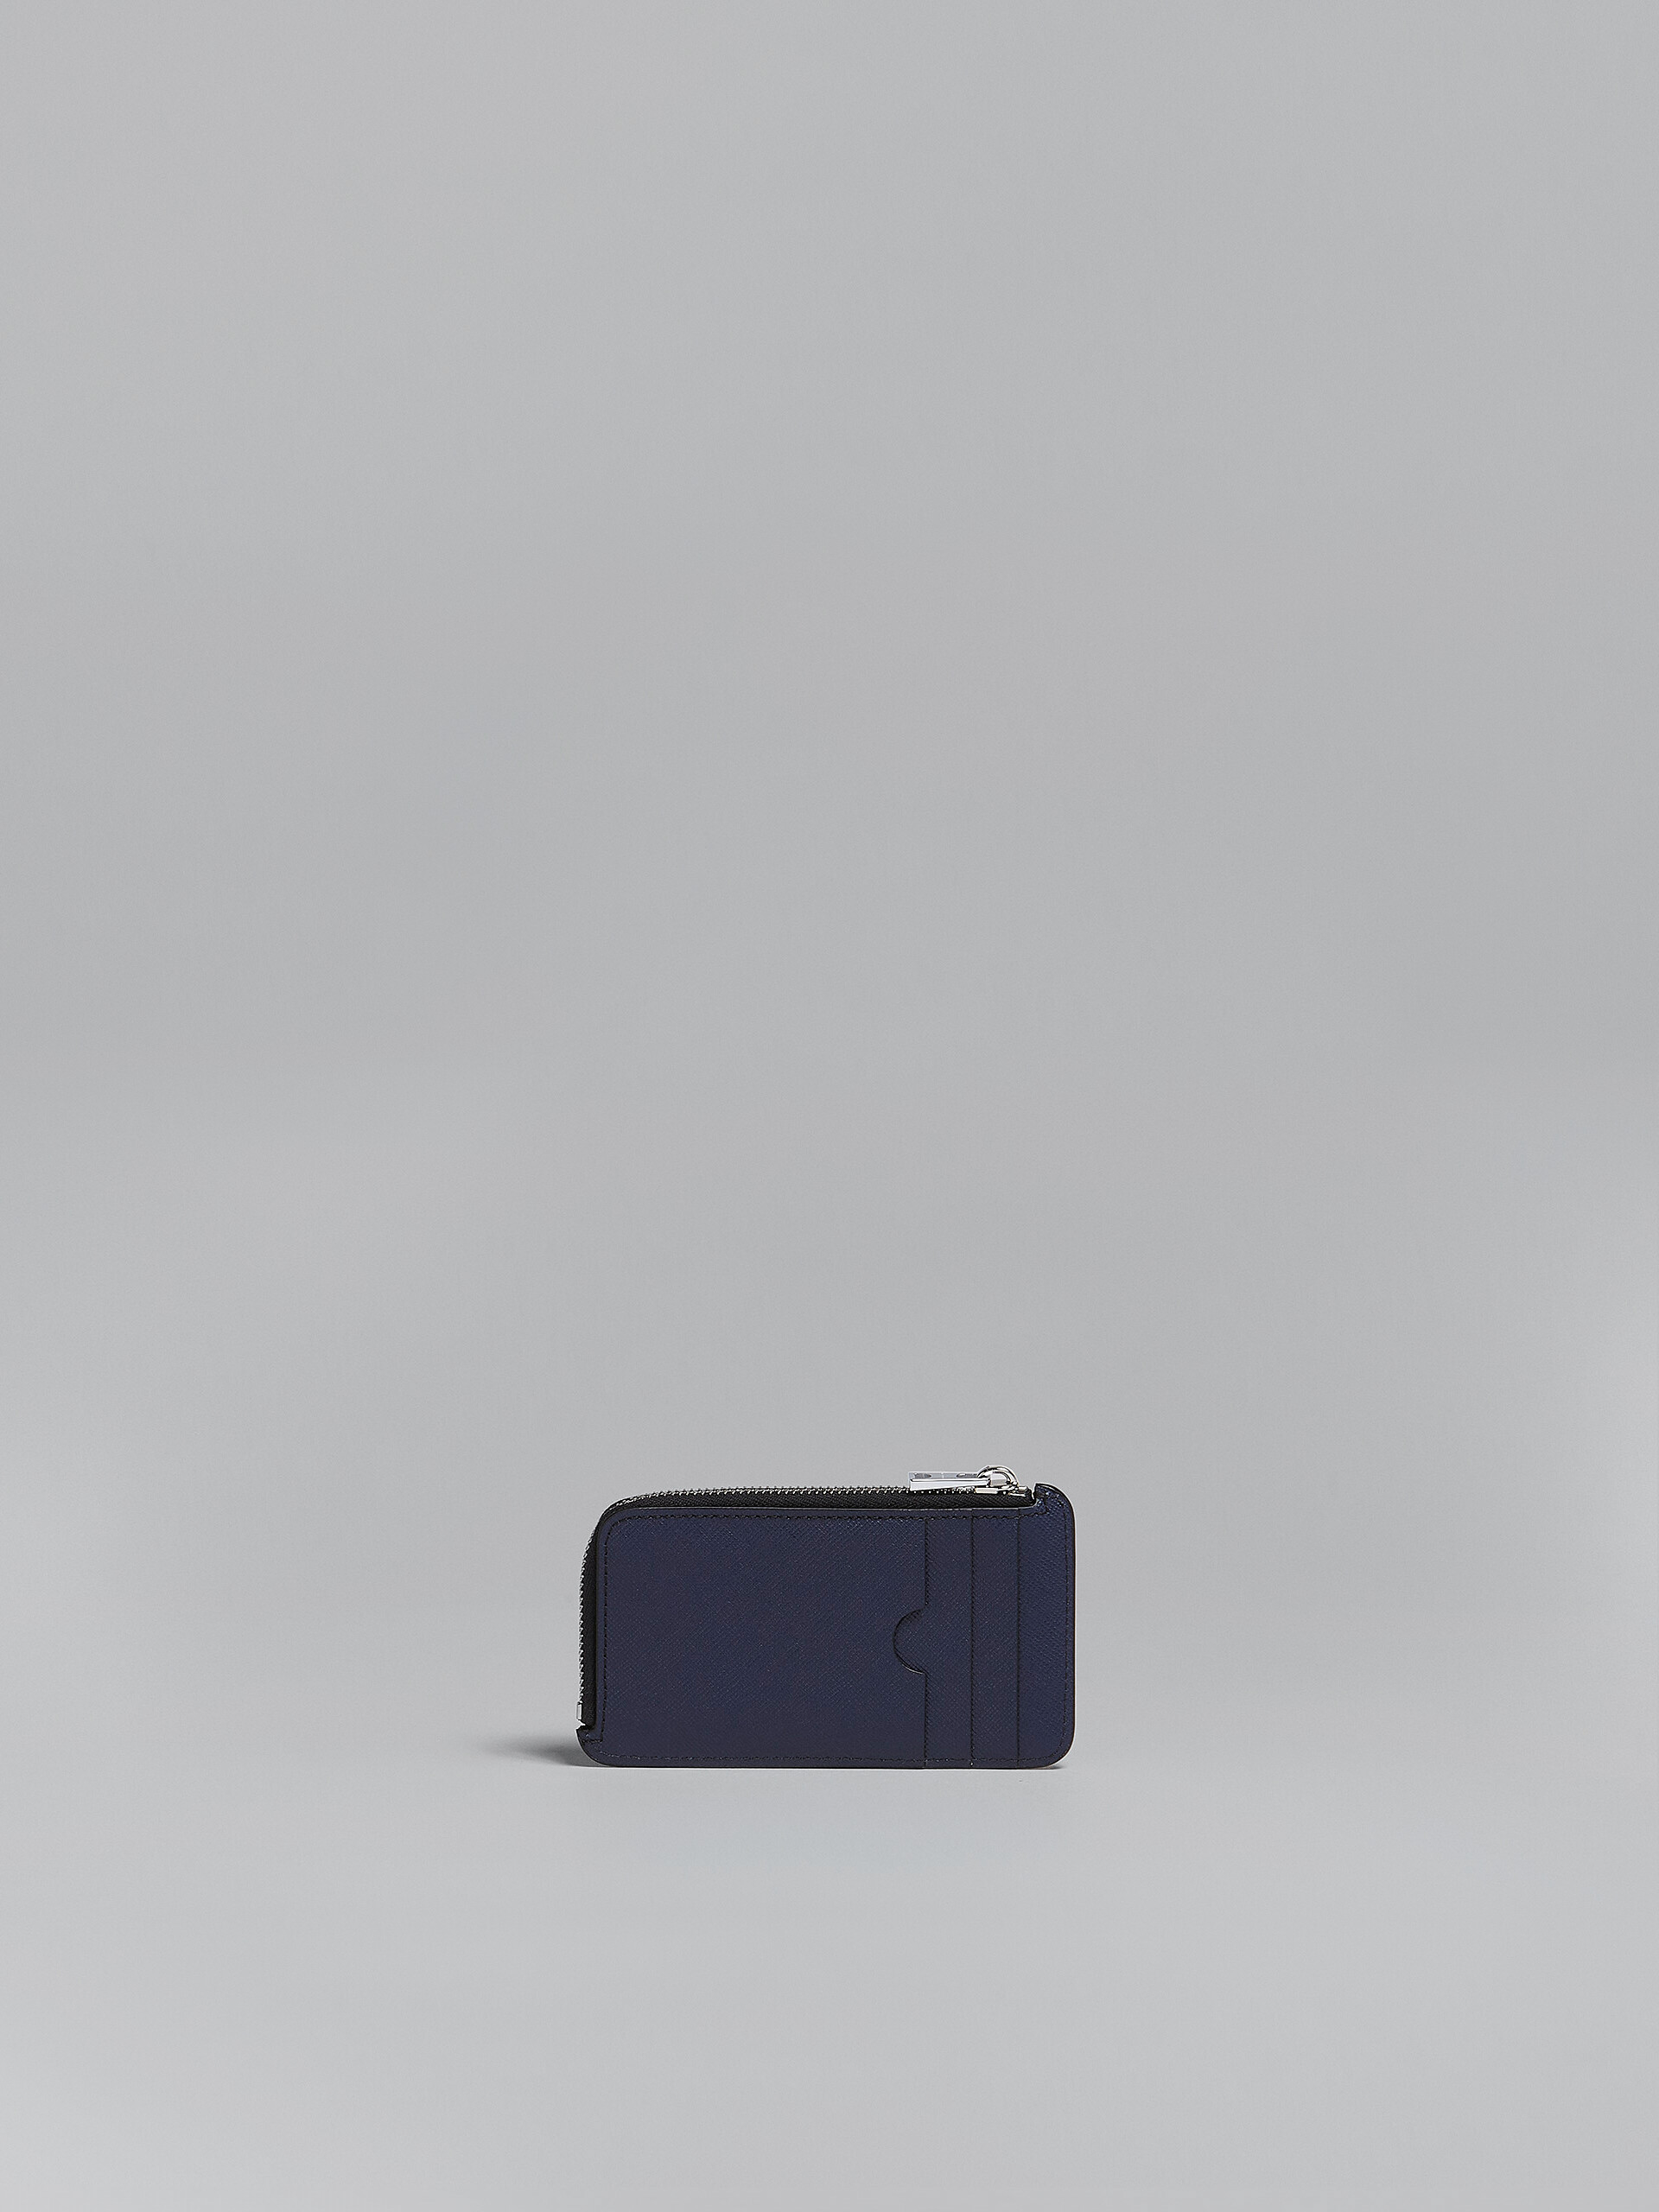 Kartenetui mit umlaufendem Reißverschluss aus Saffiano-Leder in Grau und Blau - Brieftaschen - Image 3